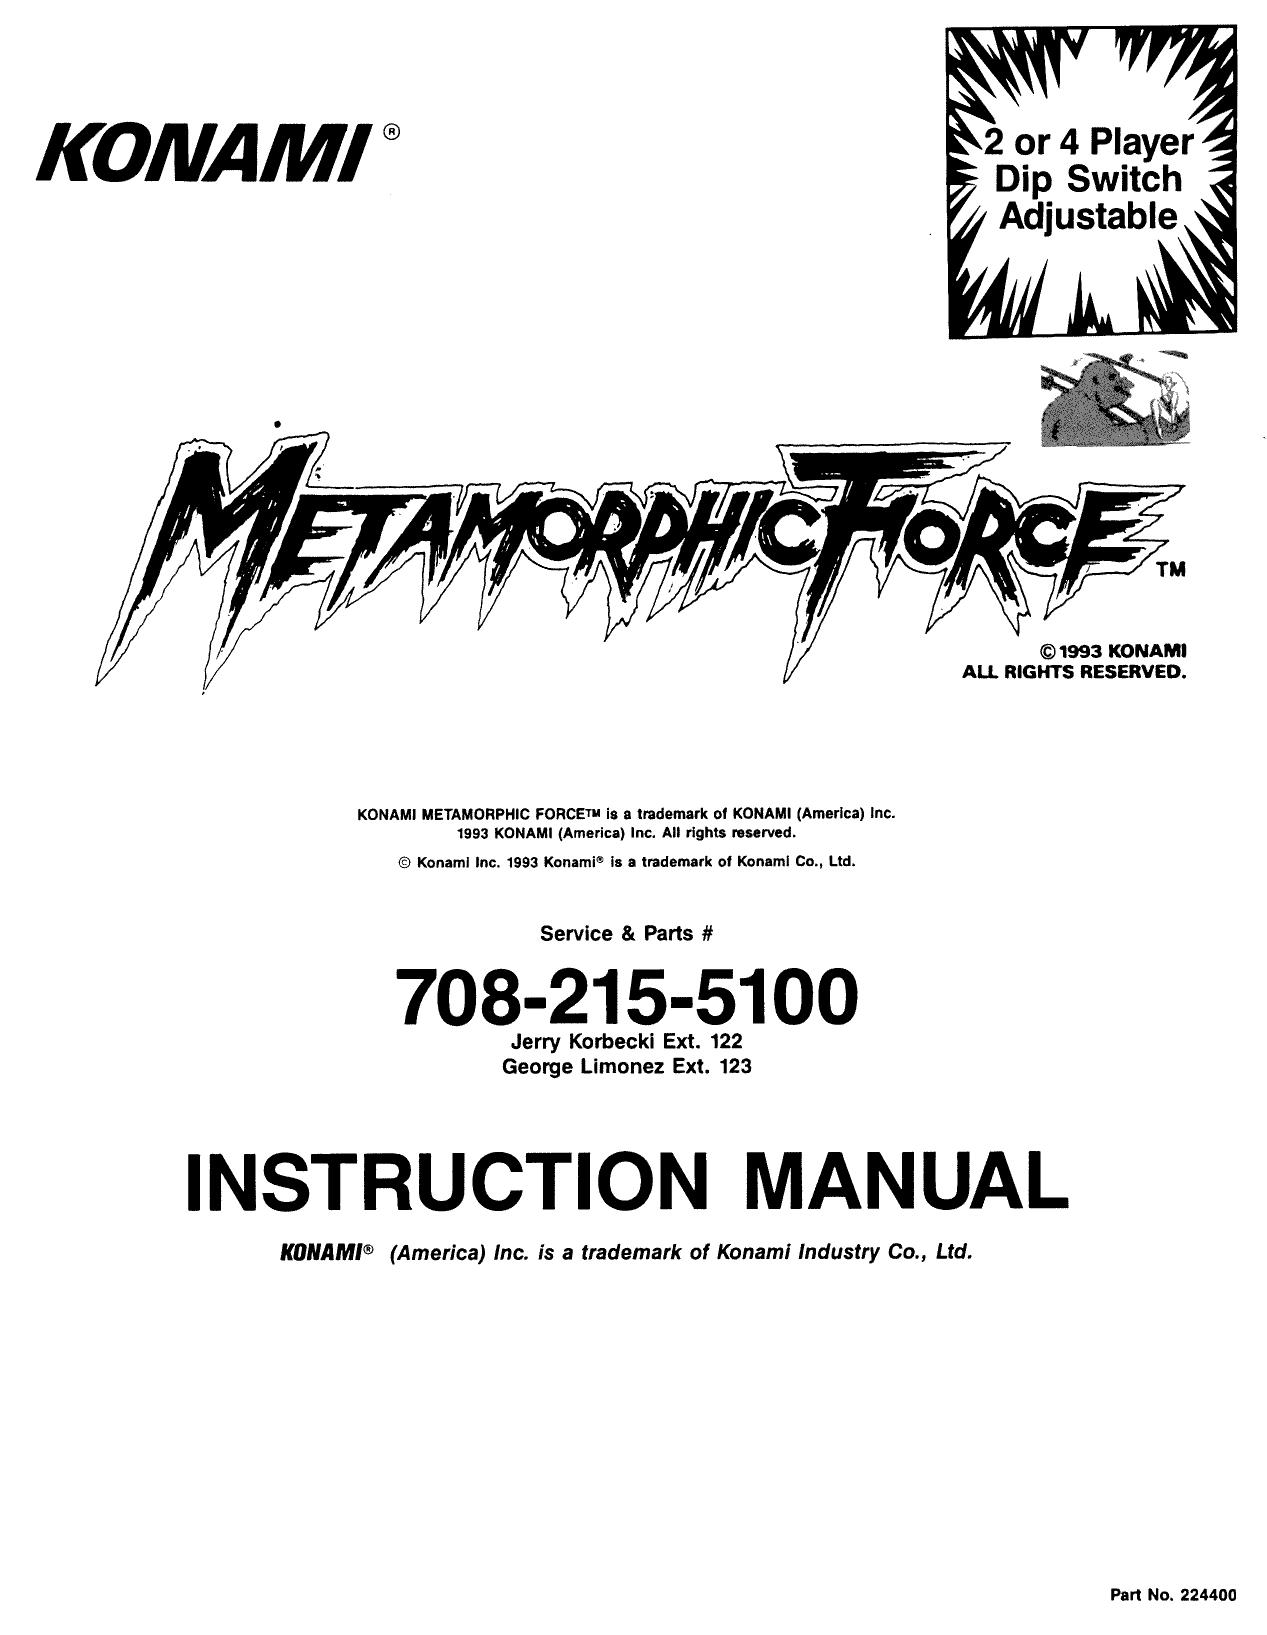 MetamorphicForce Manual